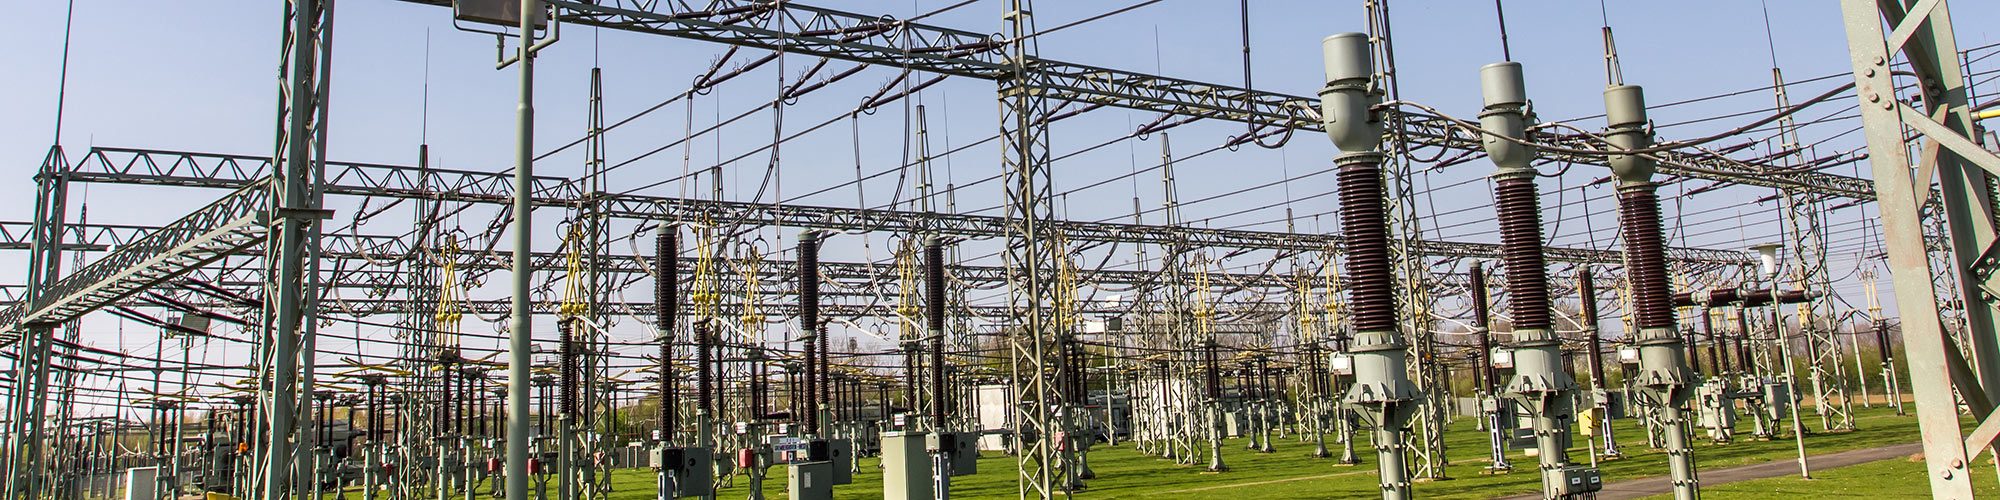 Surveillance sécurisée des installations électriques de distribution